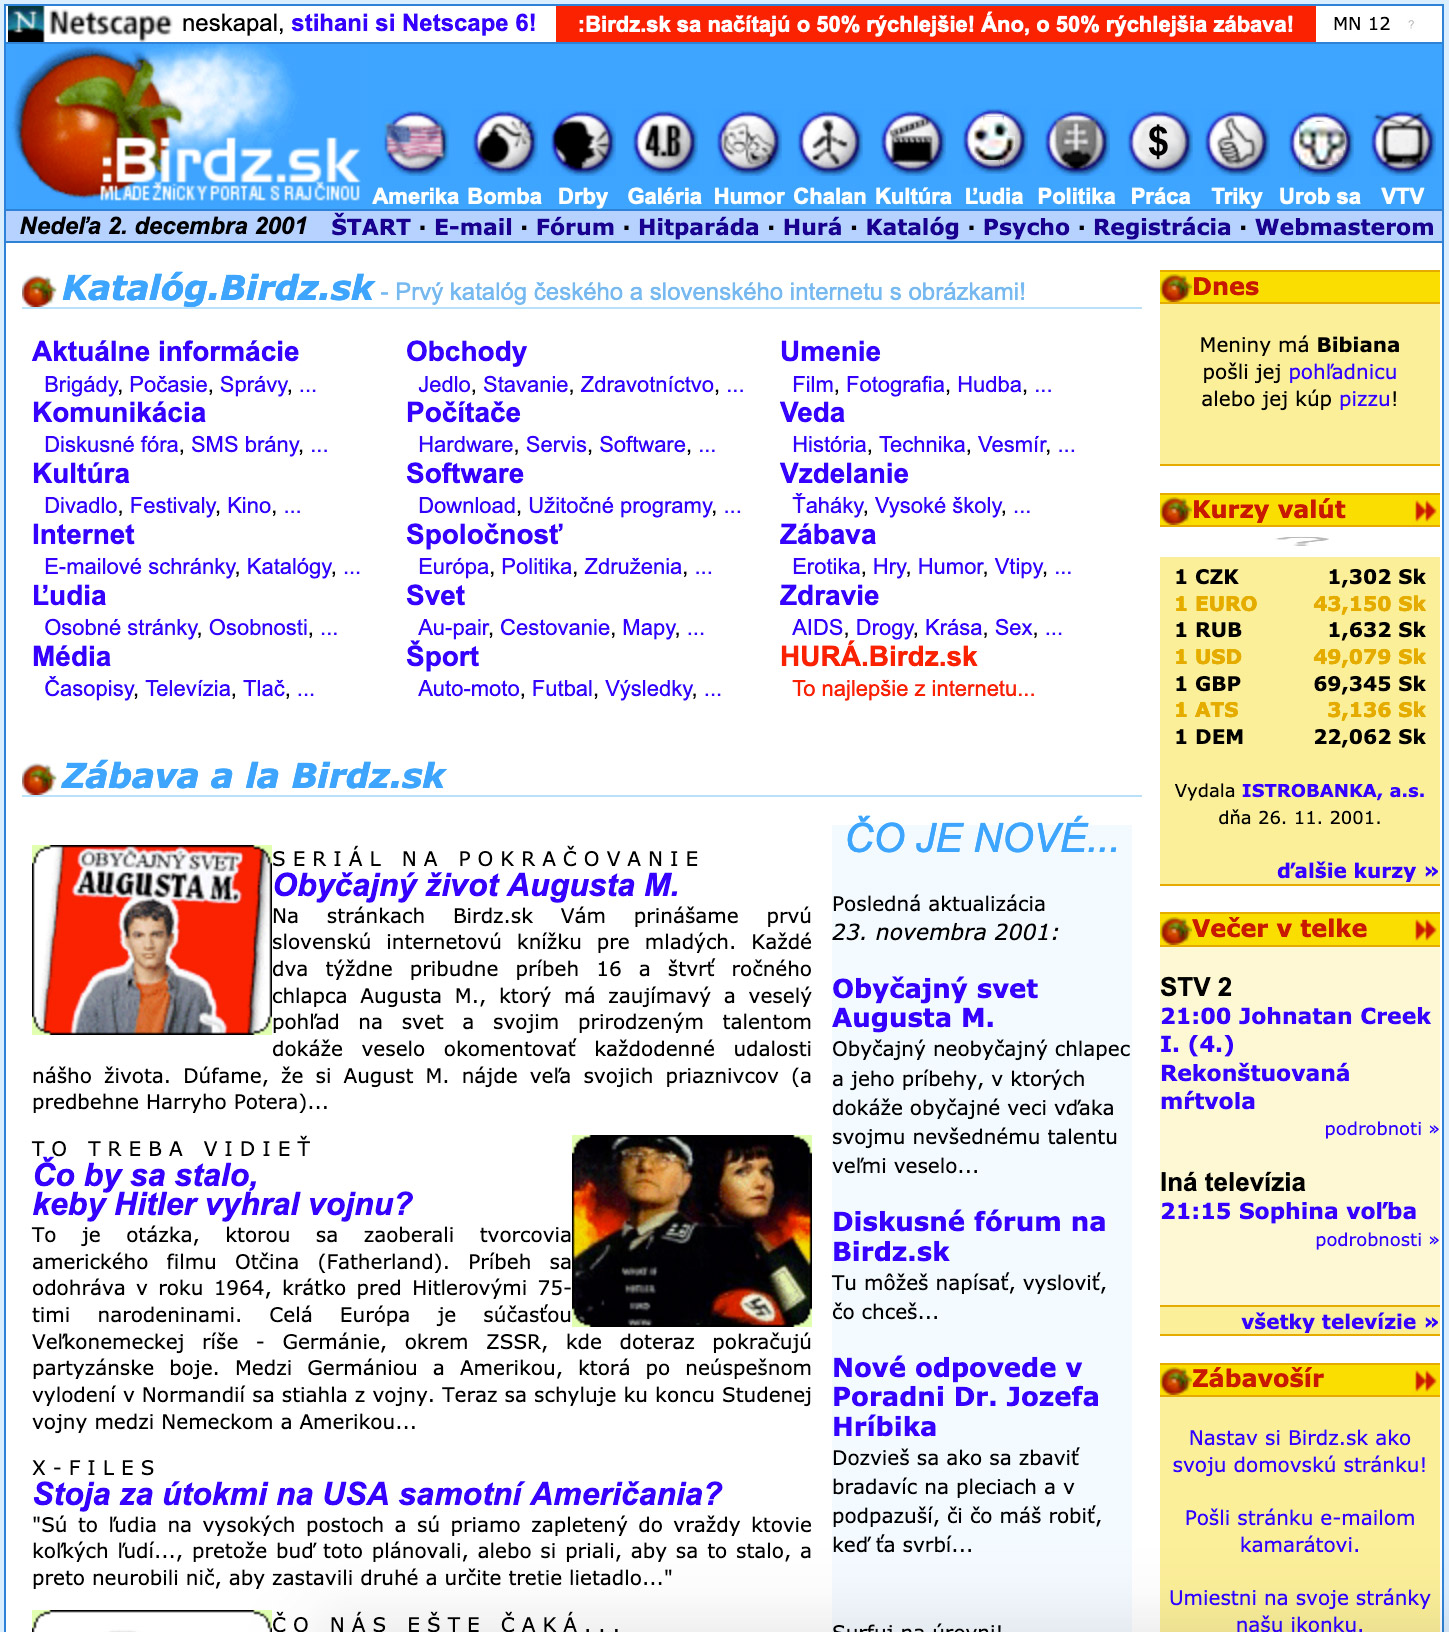 Prvý dizajn Birdz.sk z roku 2001